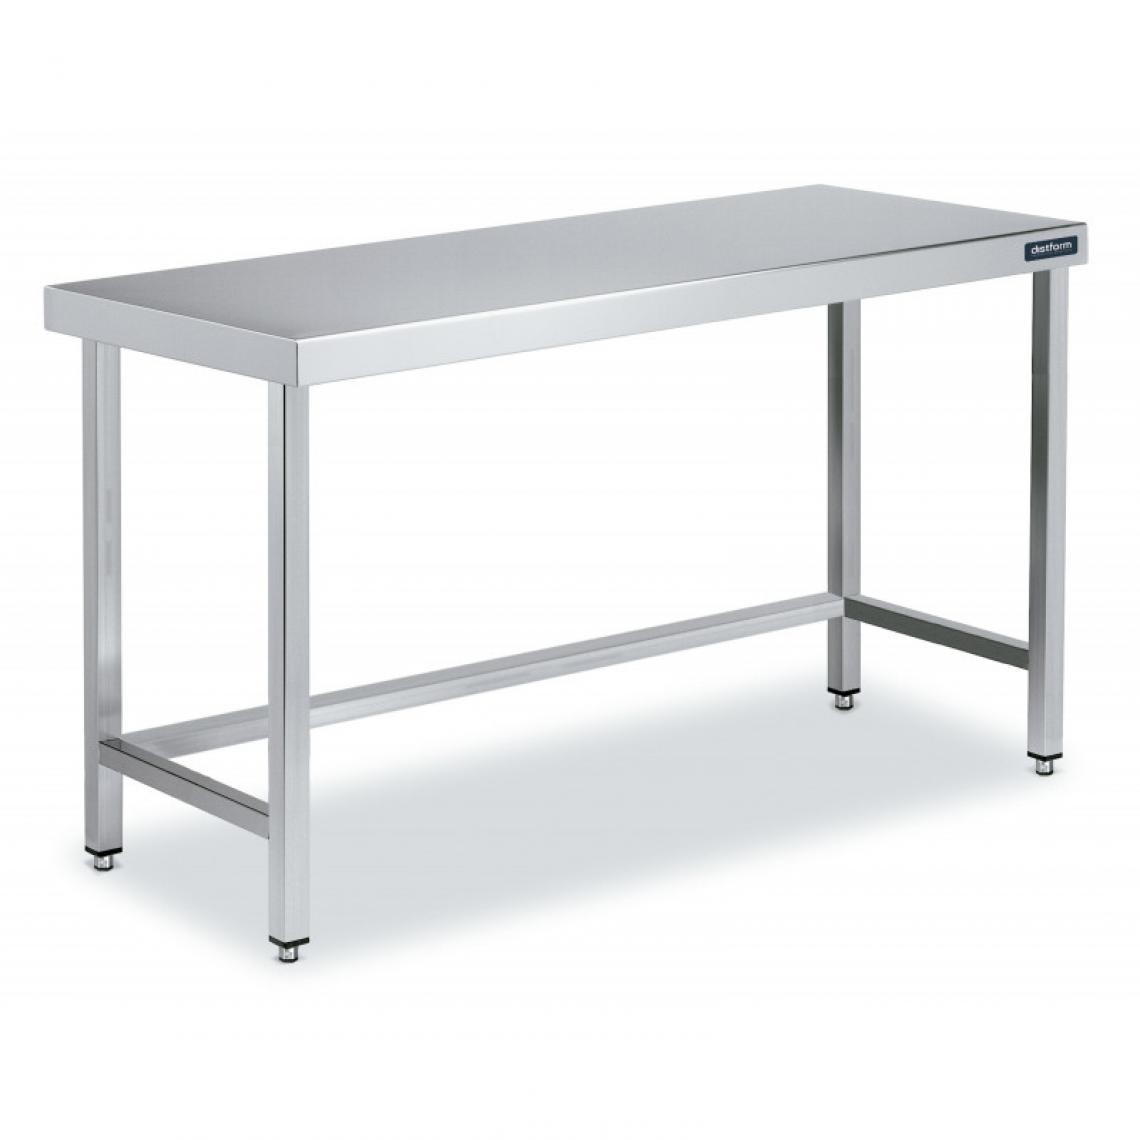 DISTFORM - Table Centrale en Inox avec renforts Profondeur 700 mm - Distform - Acier inoxydable1100x700 - Tables à manger